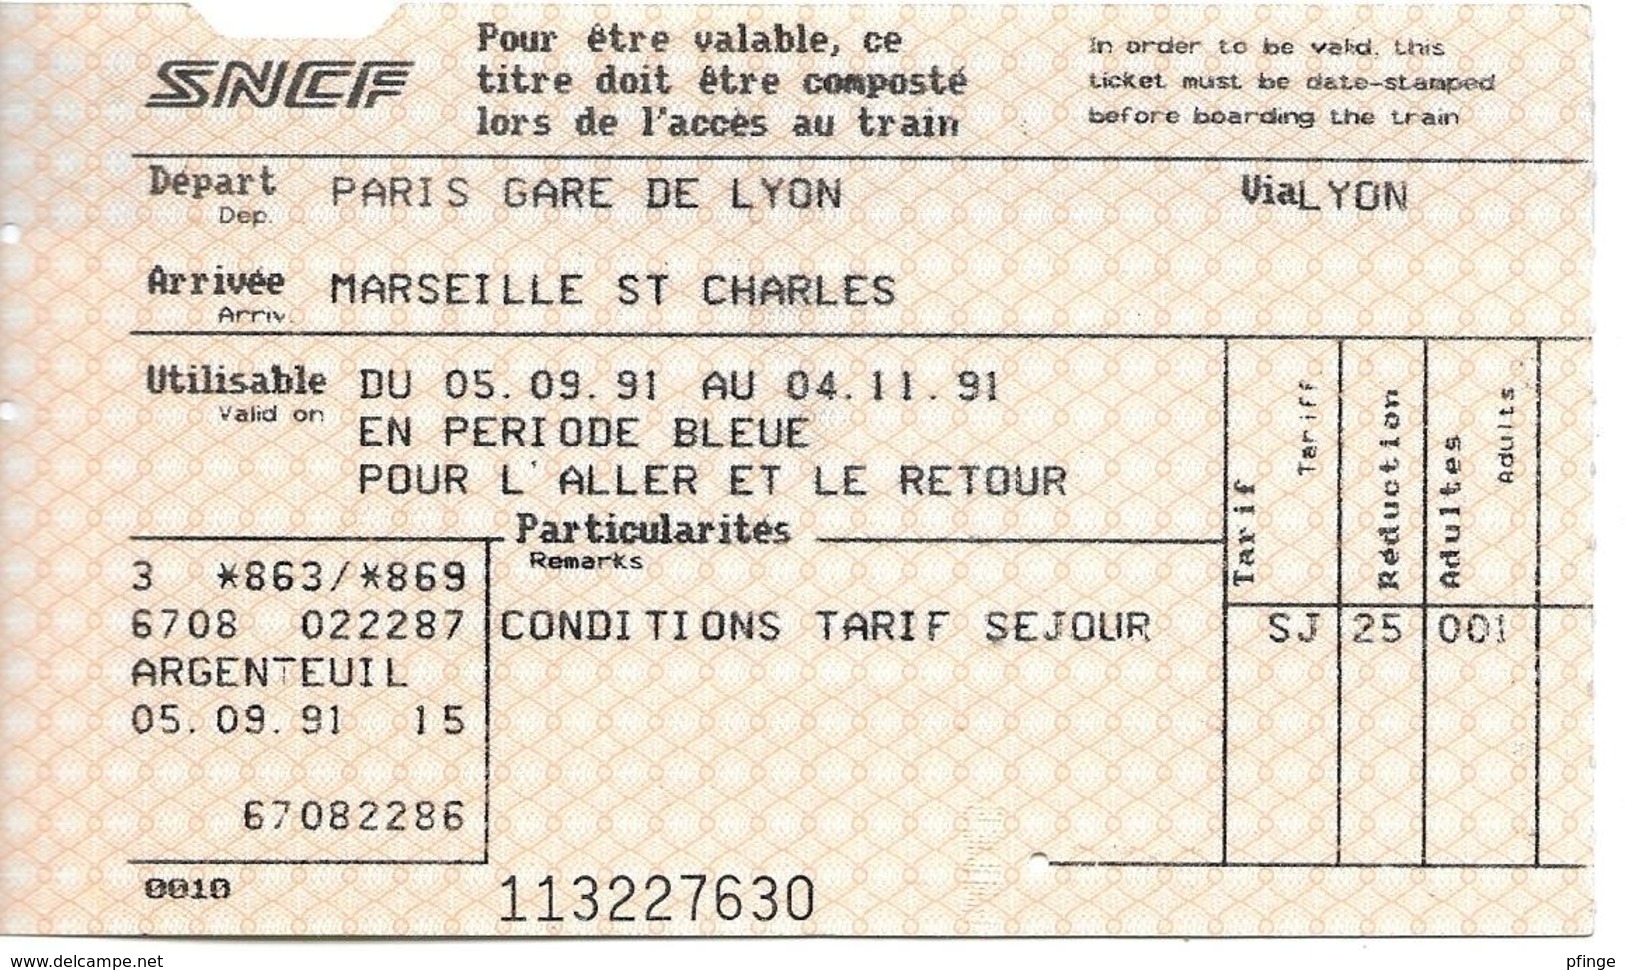 Paris Gare De Lyon - Marseille St Charles, 1991 - Europe